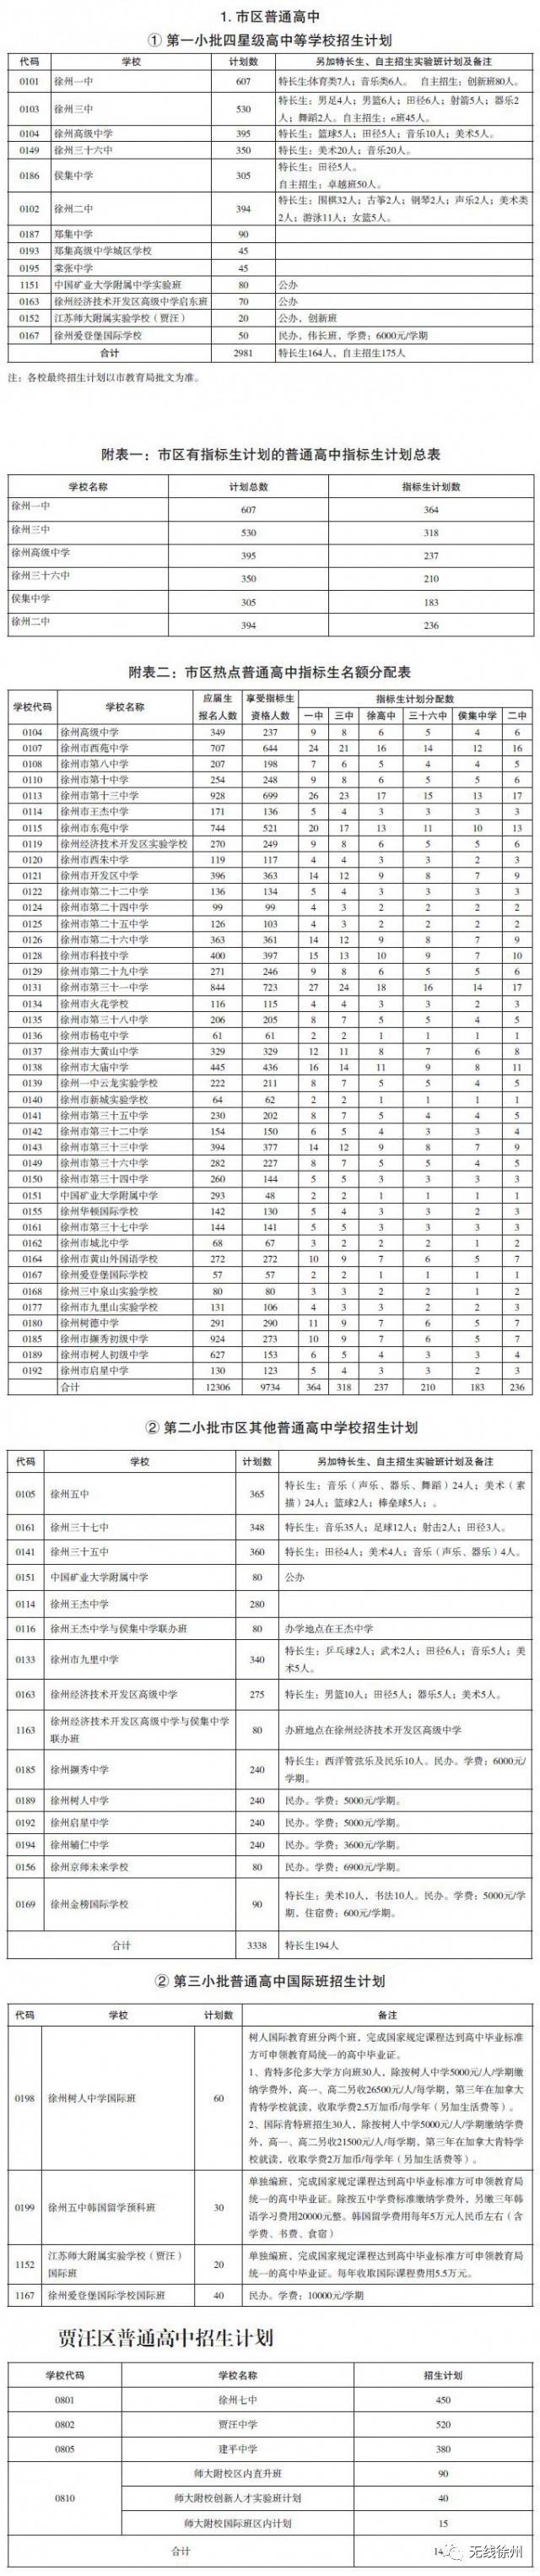 2017徐州中考:招800人,招600人,高级中学招420人